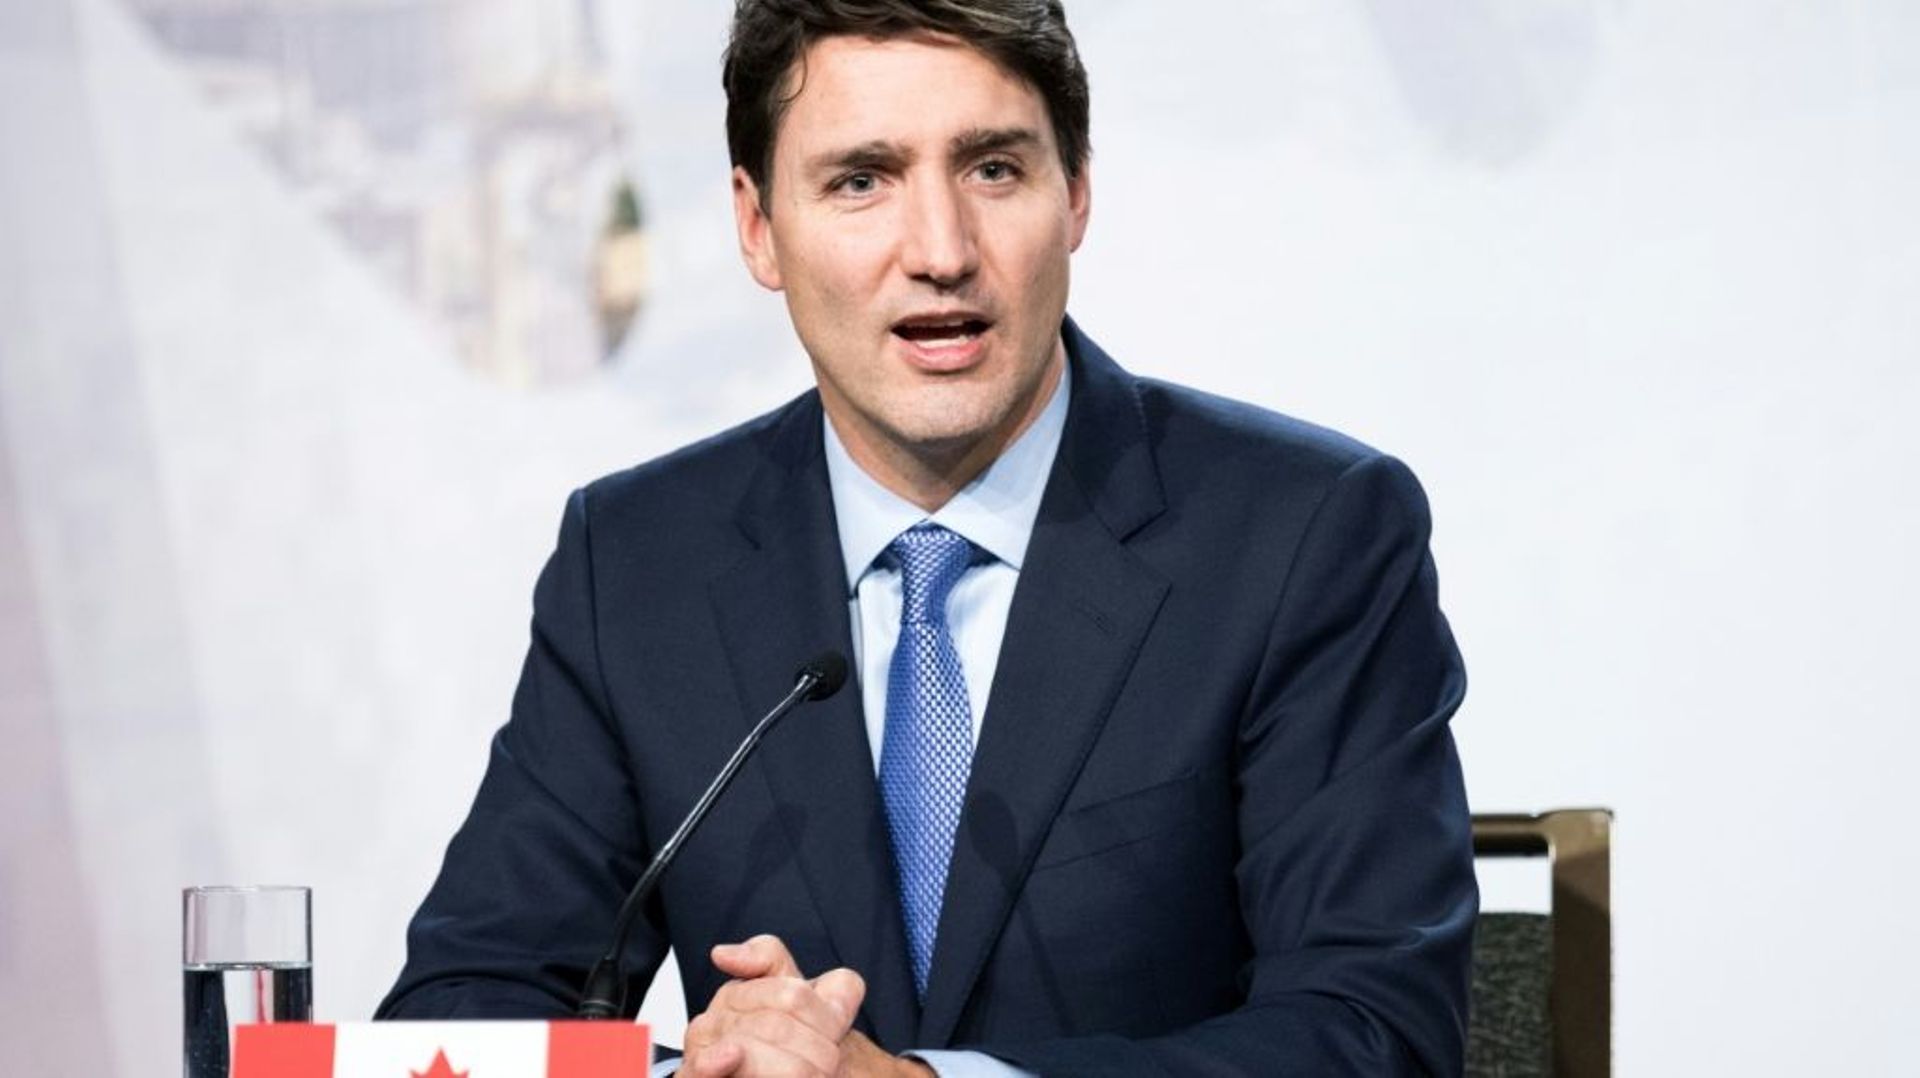 Le Premier ministre canadien Justin Trudeau photographié en décembre à Montréal.
